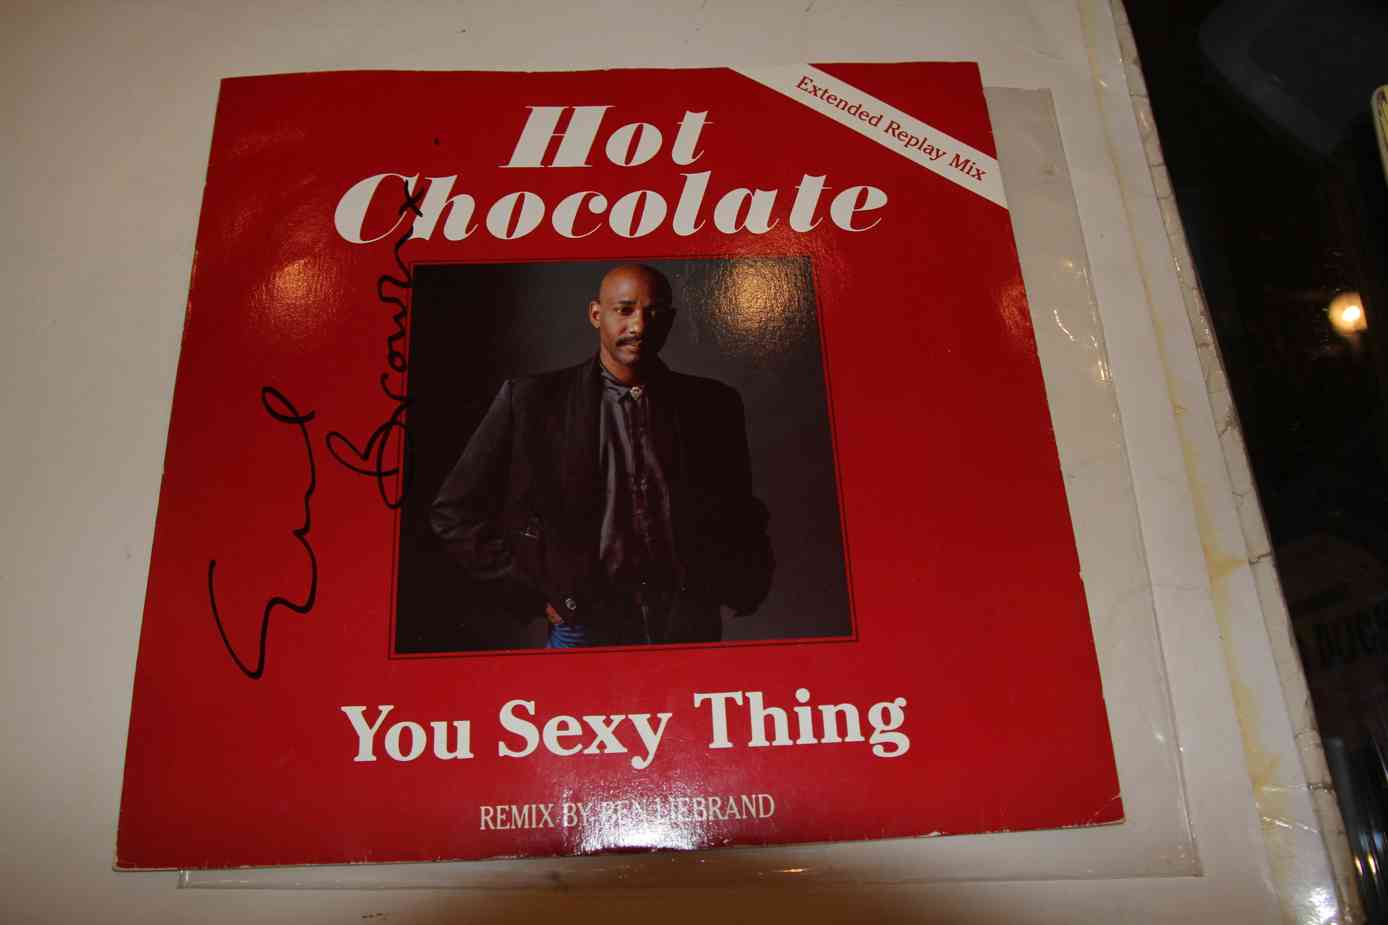 HOT CHOCOLATE - YOU SEXY THING - S ORIGINL PODPISEM ERROL BROWN - Kliknutm na obrzek zavete